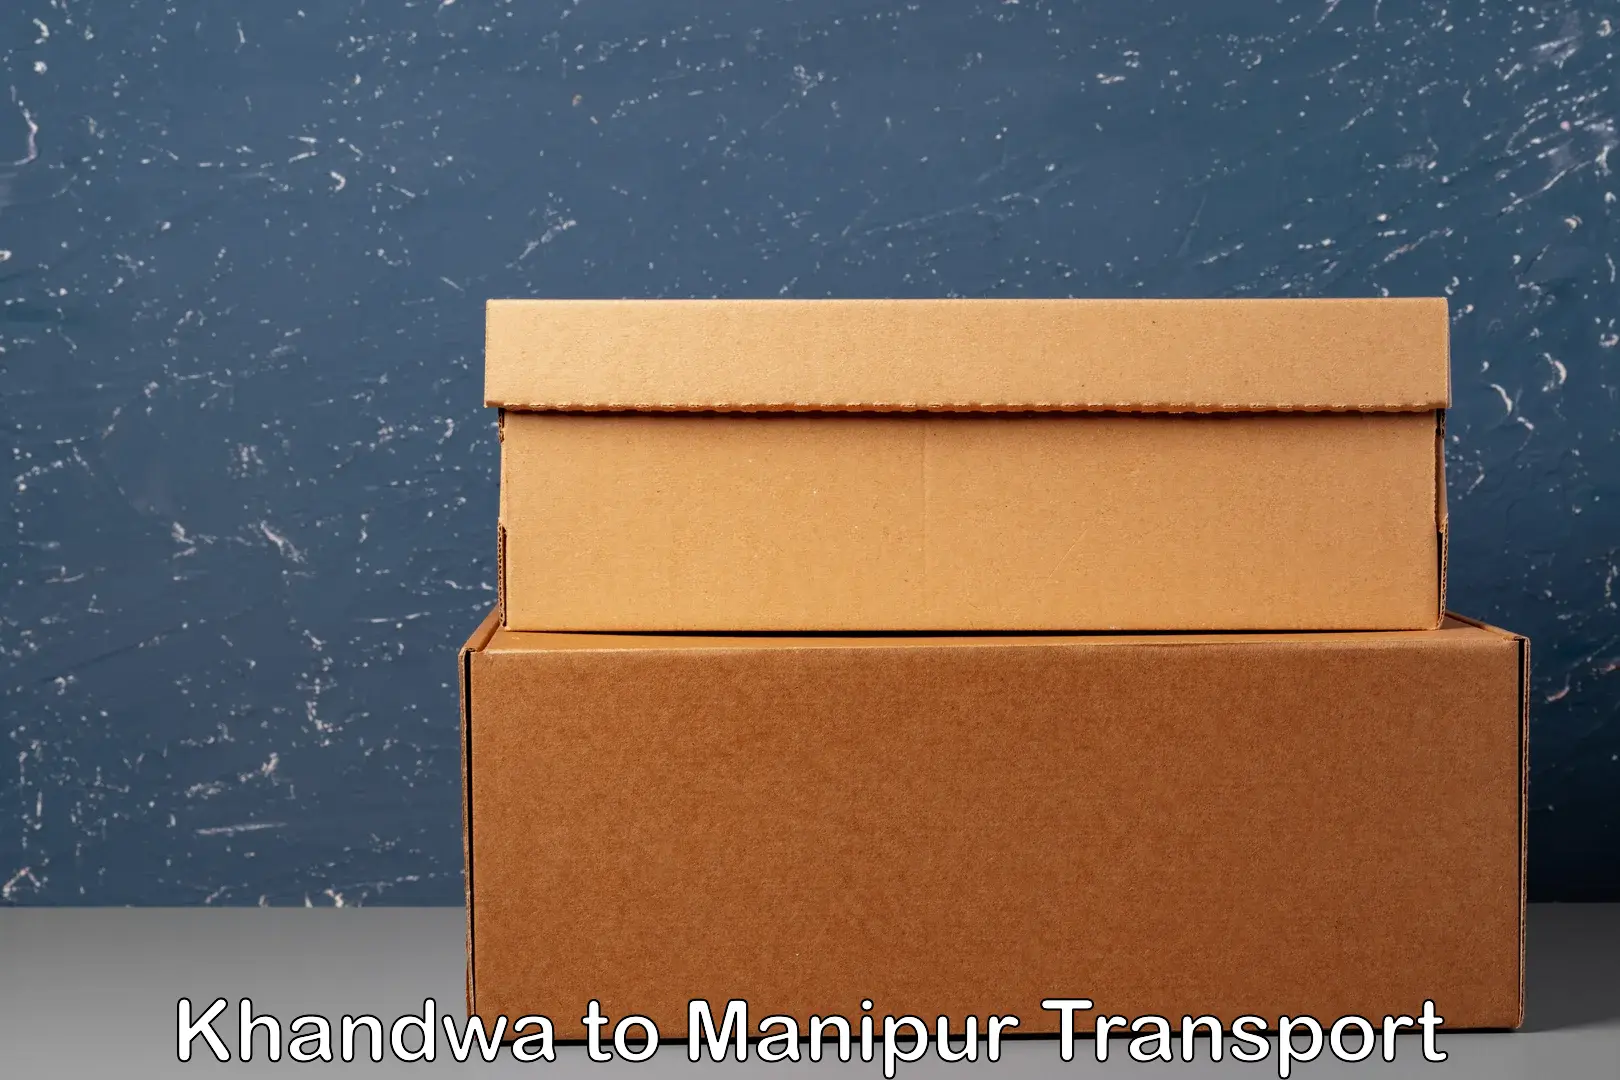 Furniture transport service Khandwa to Manipur